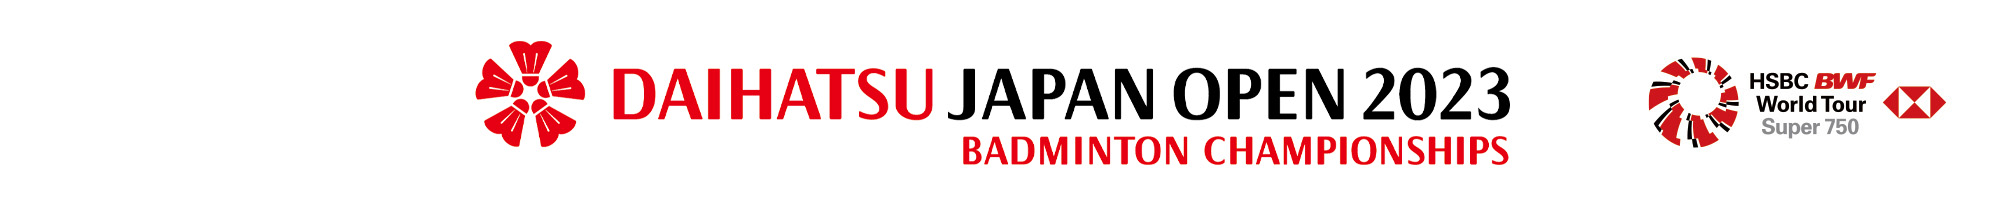 ダイハツジャパンオープン2023　公式サイト　DAIHATSU JAPAN OPEN 2023 Part of HSBC BWF World Tour Super 750  Official Web Site